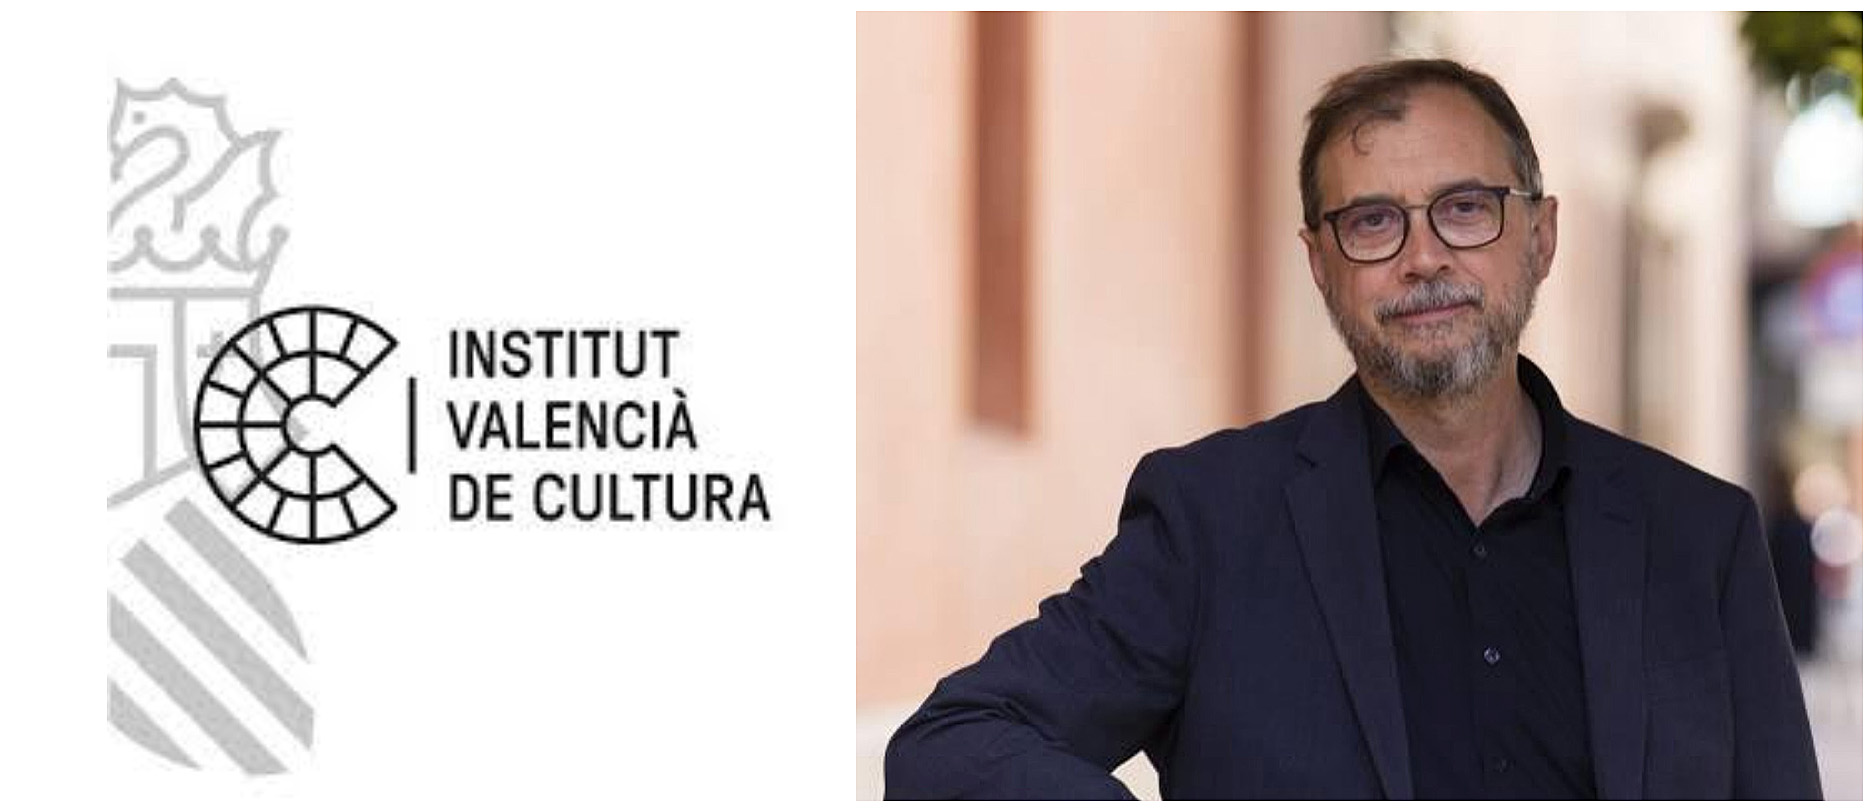 El Institut Valencià de Cultura presenta la programación del próximo trimestre en Castellón